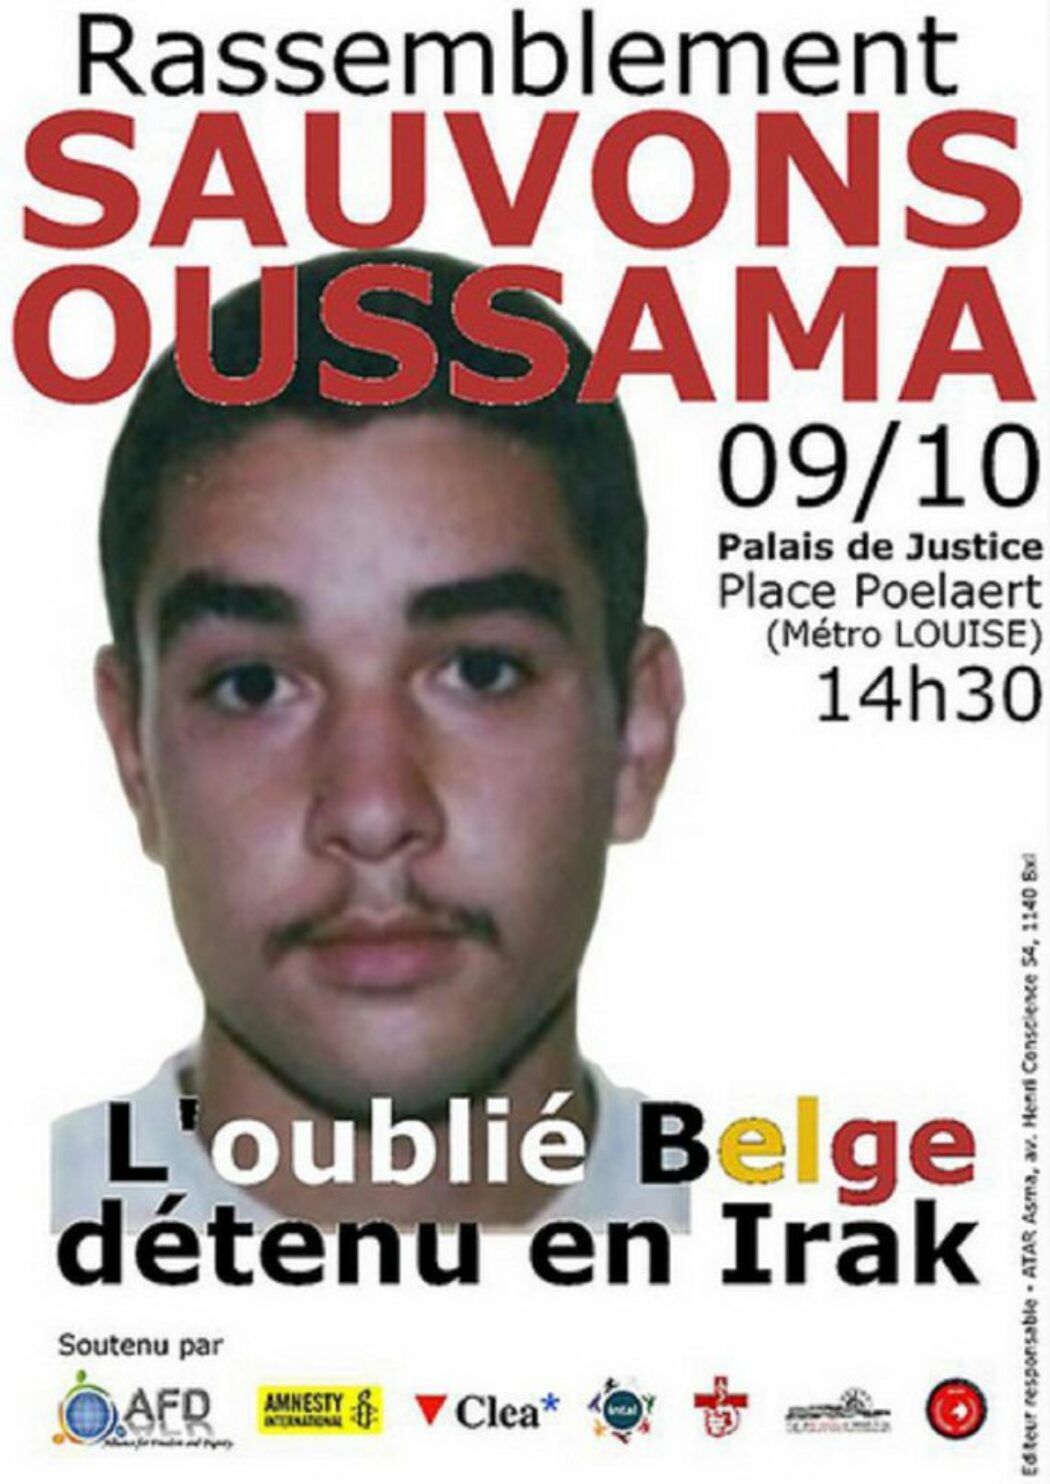 5,7 millions d’euros pour une association qui a milité pour la libération d’Oussama Atar, superviseur des attaques du 13 novembre 2015 !